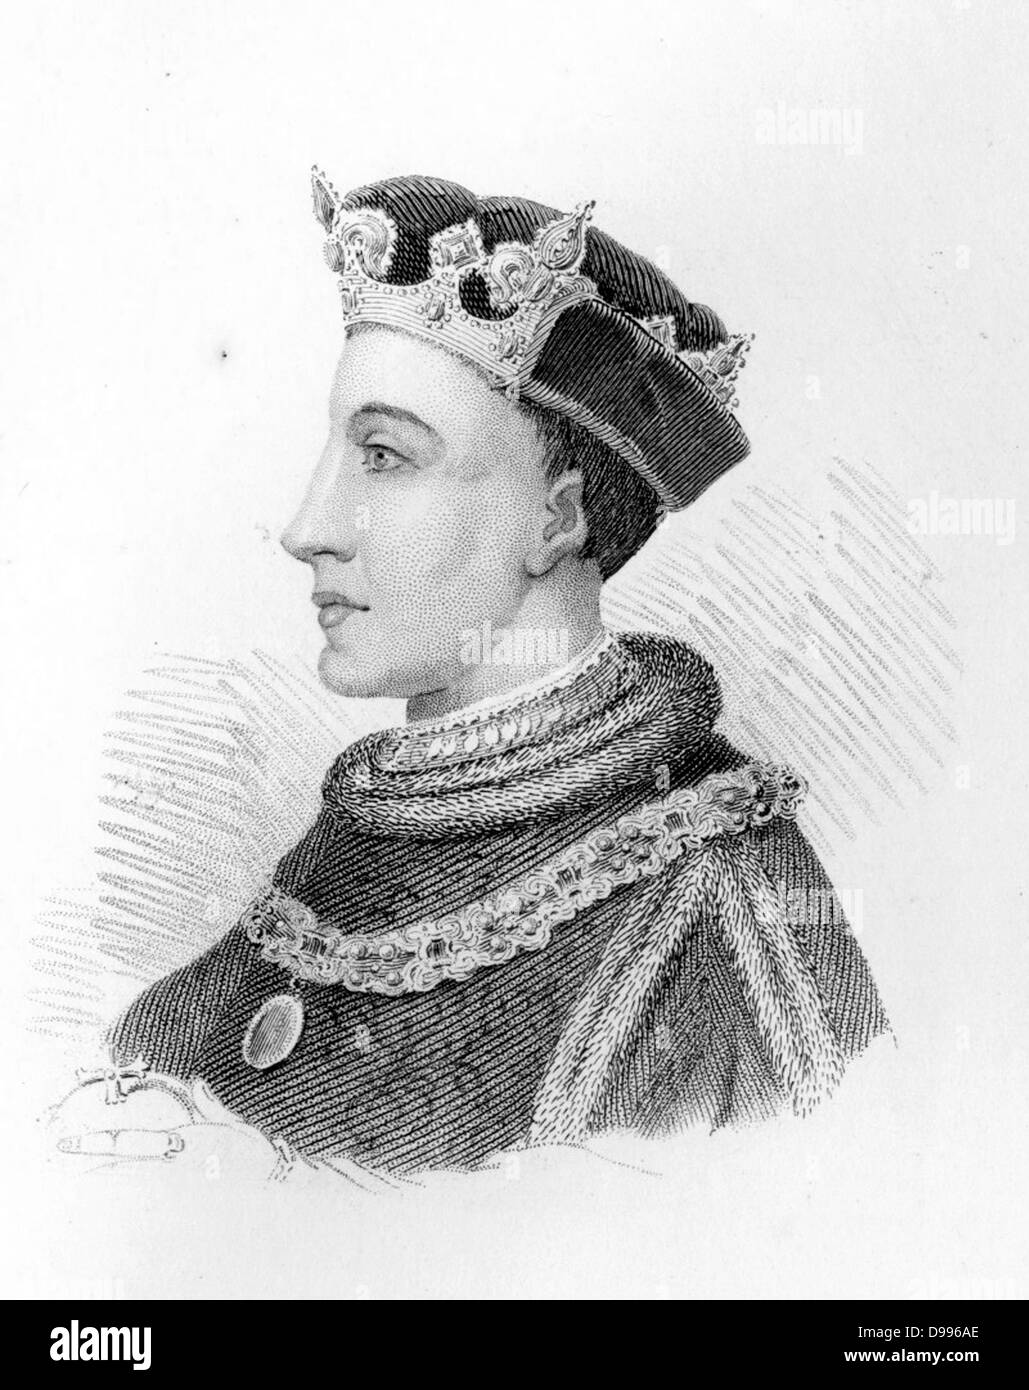 Enrico V (16 settembre 1386 - 31 agosto 1422[1][2]) era re d'Inghilterra dal 1413 fino alla sua morte, all'età di 35 nel 1422. Egli fu il secondo monarca inglese che è venuto dalla casa di Lancaster. Foto Stock